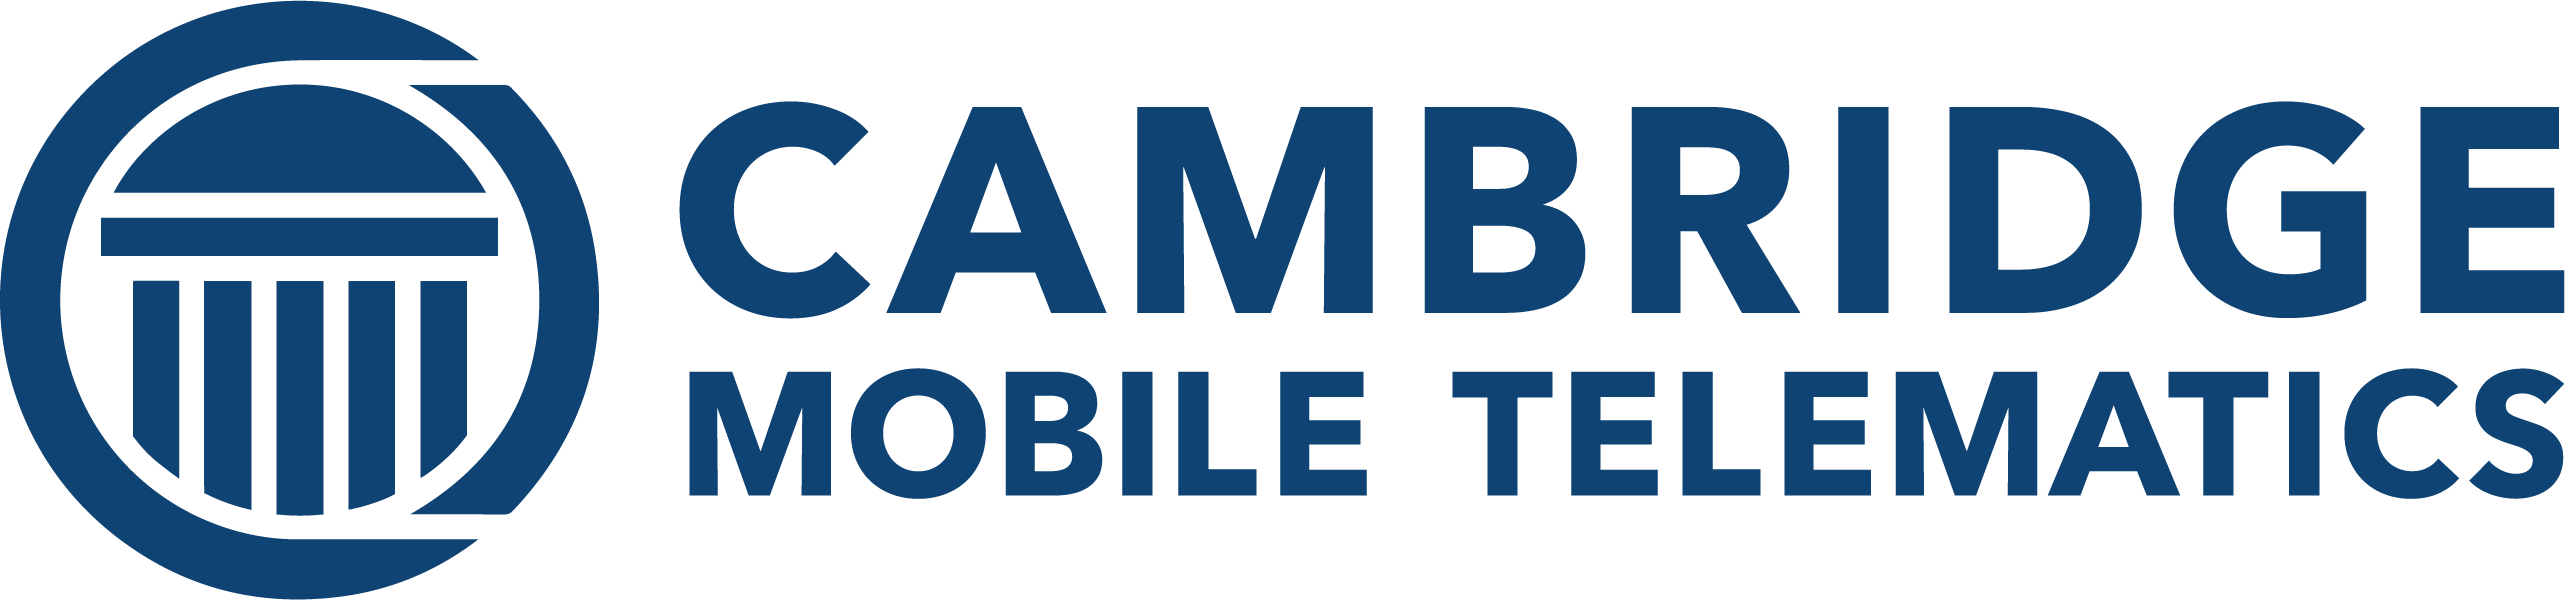 Partner: Cambridge Mobile Telematics